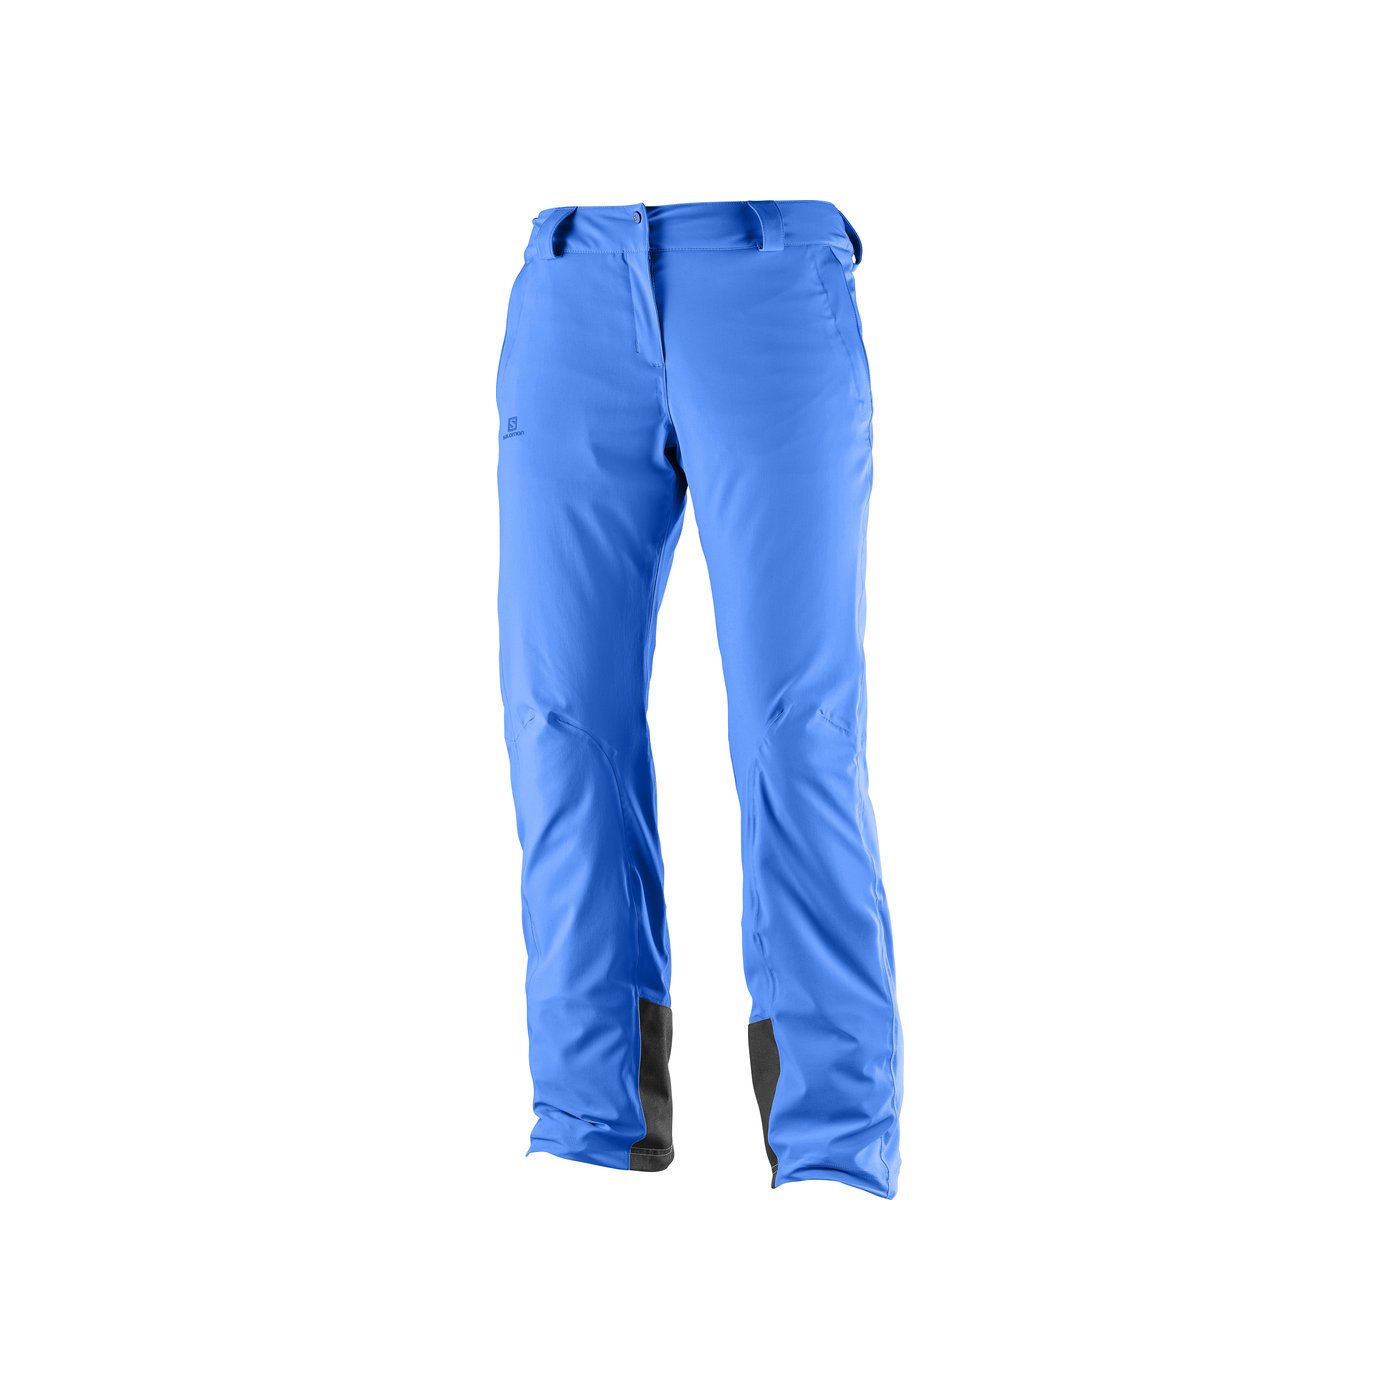 Salomon Icemanıa Kadın Kayak Pantolonu - Mavi - 1